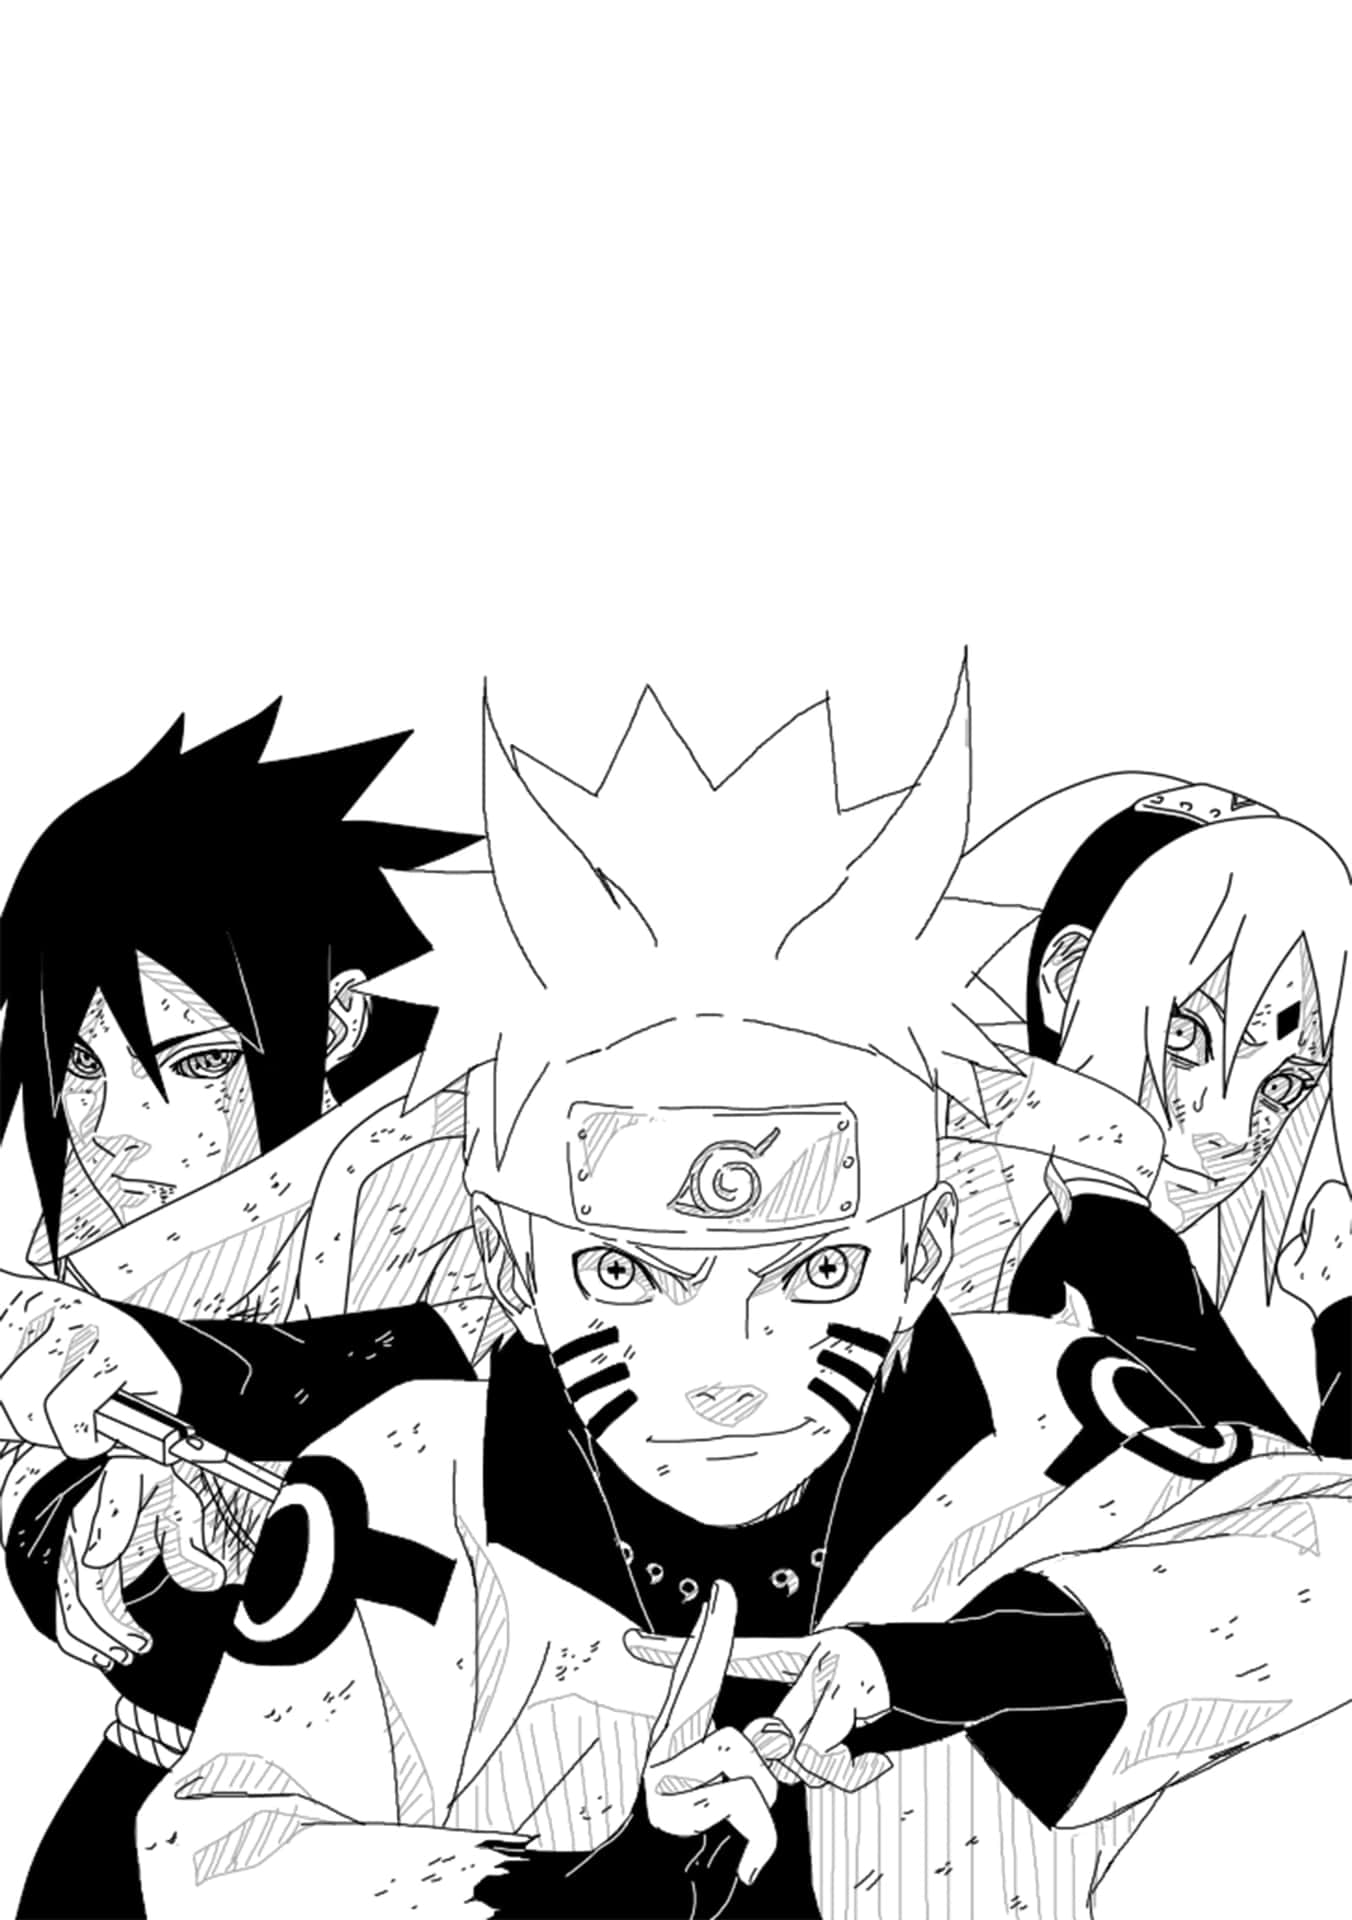 Upptäckninjavärlden Med Naruto! Wallpaper